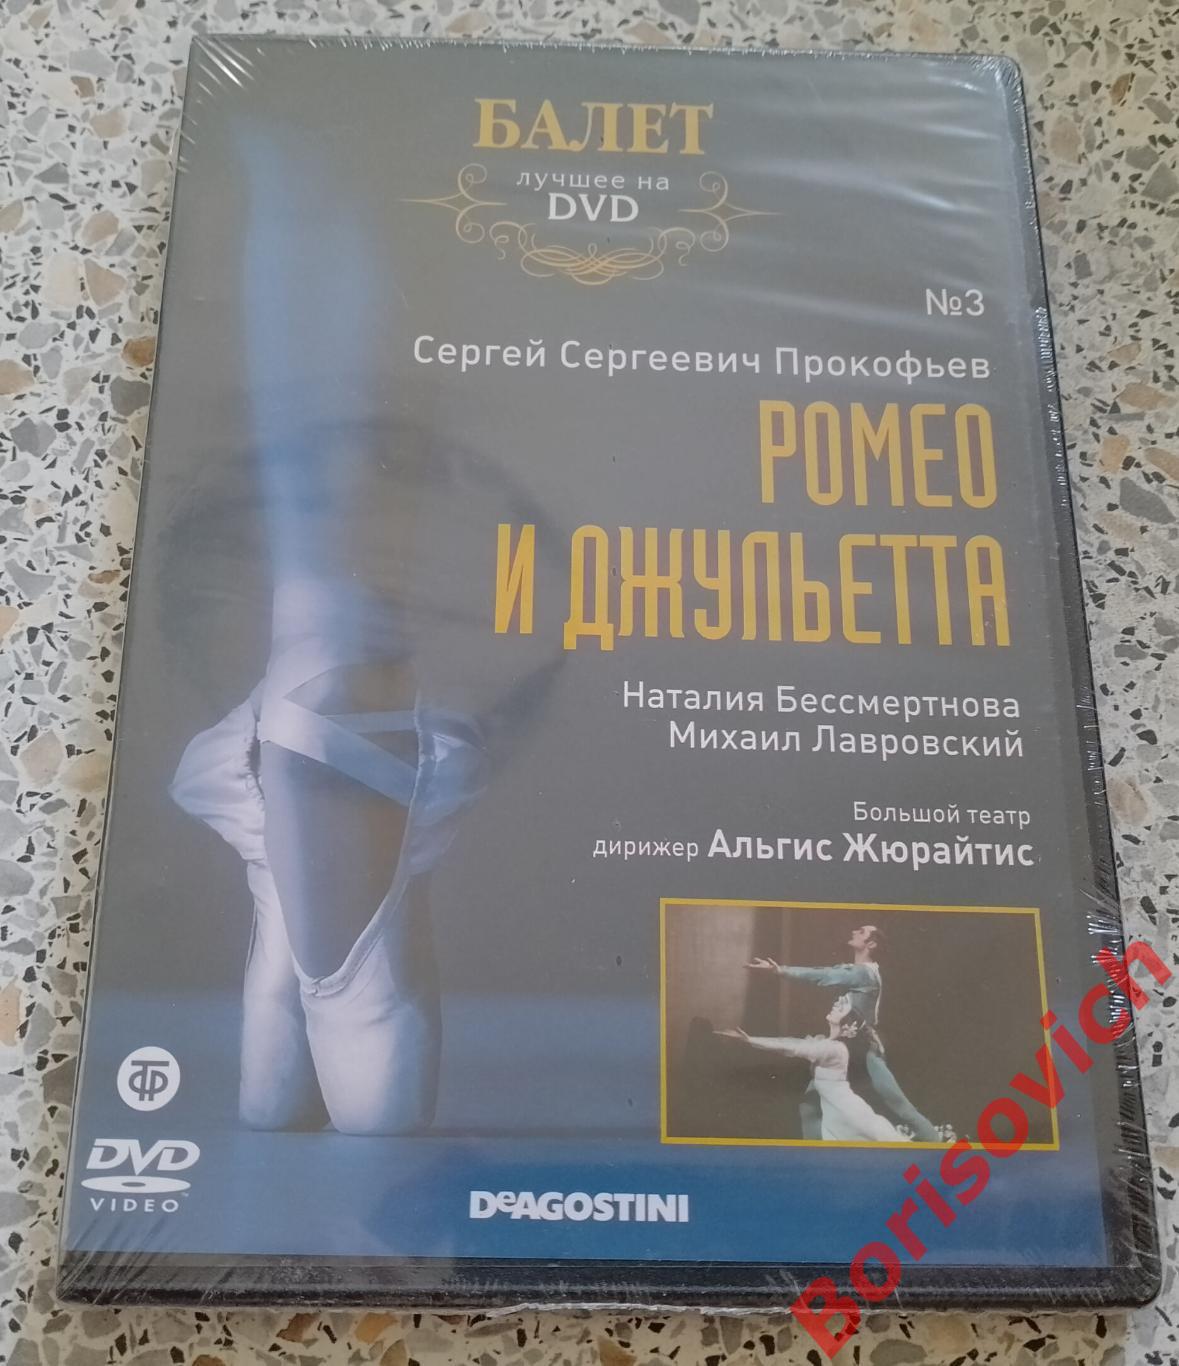 Балет лучшее на DVD С. С. Прокофьев Ромео и Джульетта